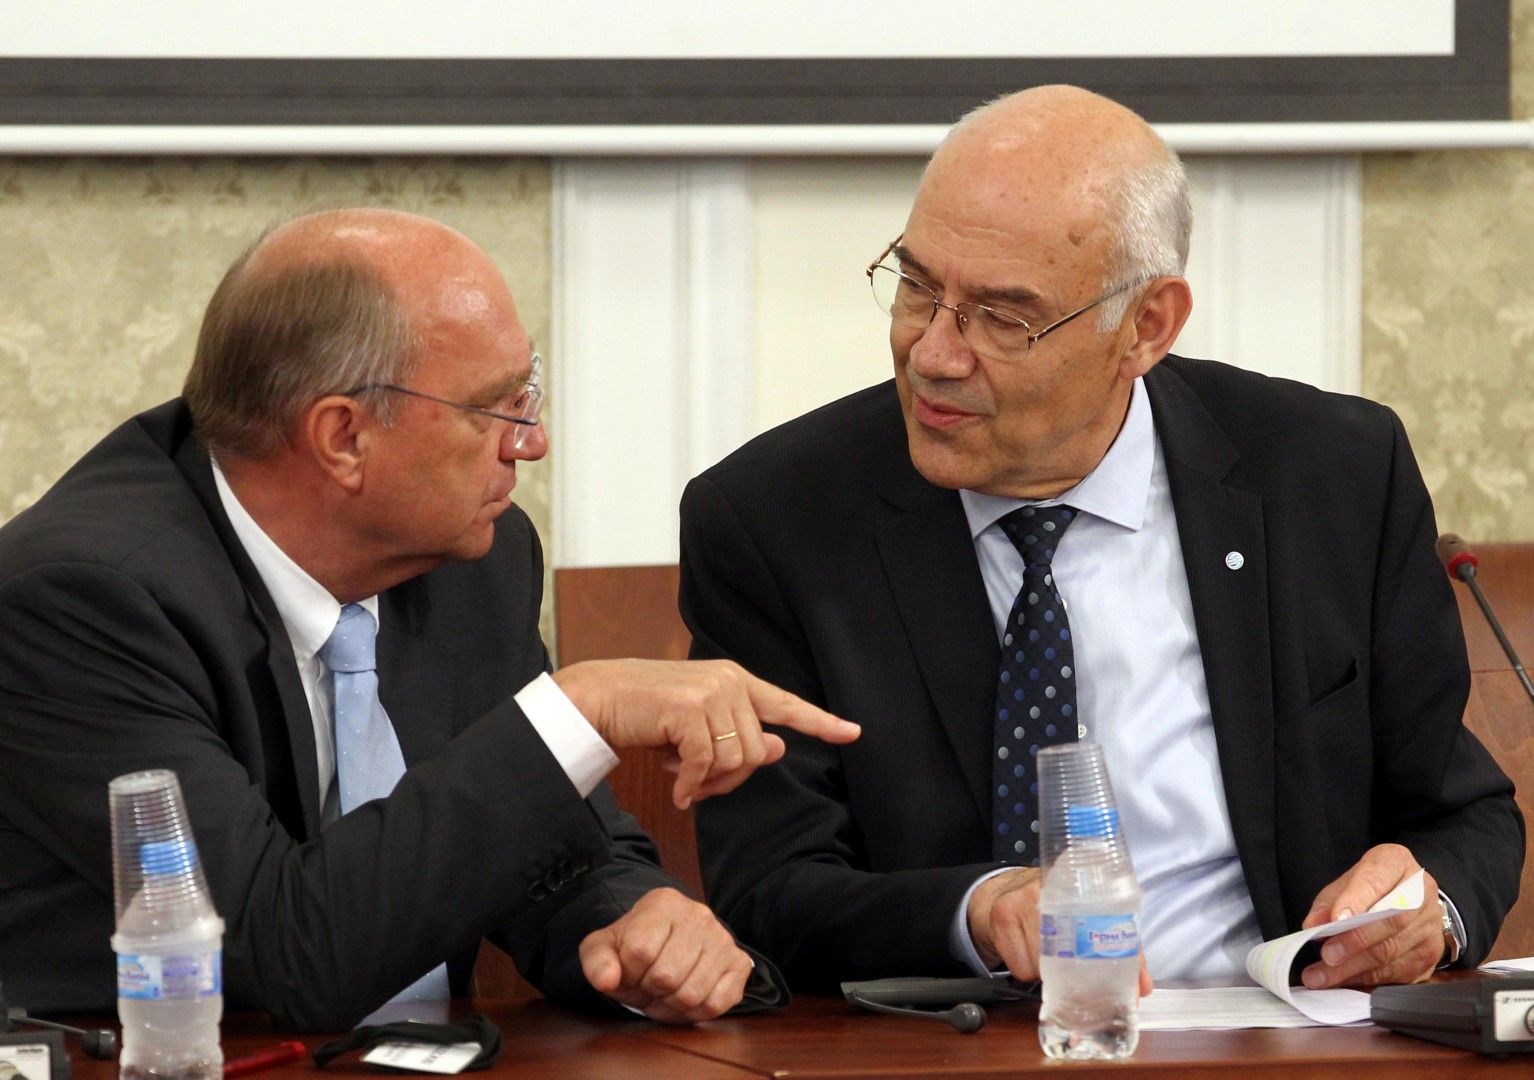 Заместник-директорът на Генерална дирекция "Енергетика" в ЕК Клаус Дитер Борхард (ляво) и Иван Иванов -КЕВР по време на заседанието на енергийната комисия